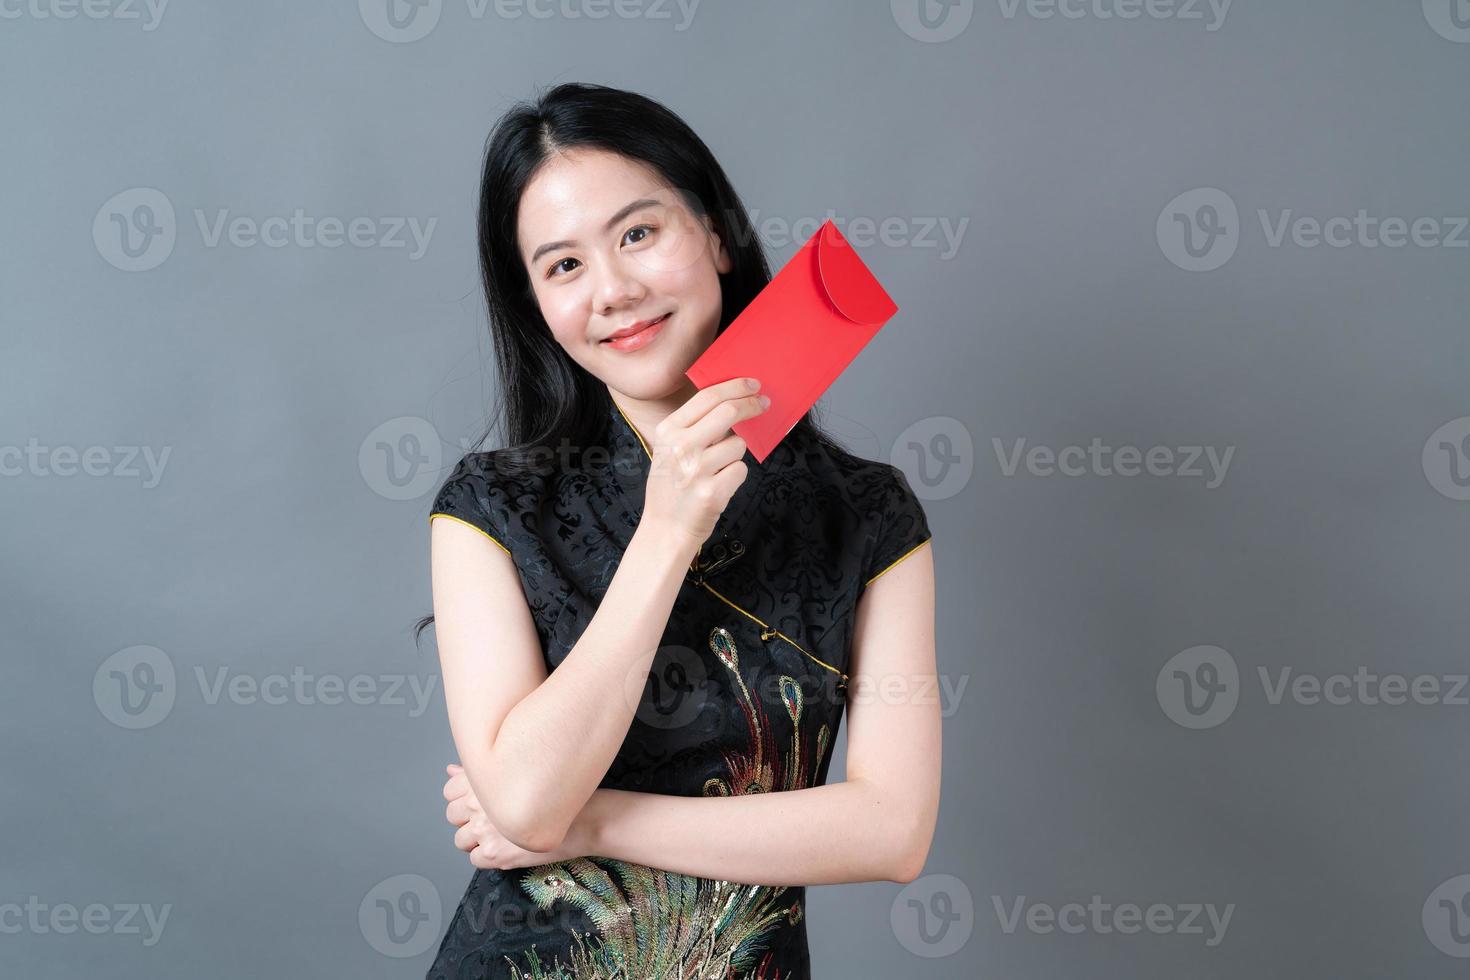 aziatische vrouw draagt chinese traditionele kleding met rode envelop of rood pakje foto